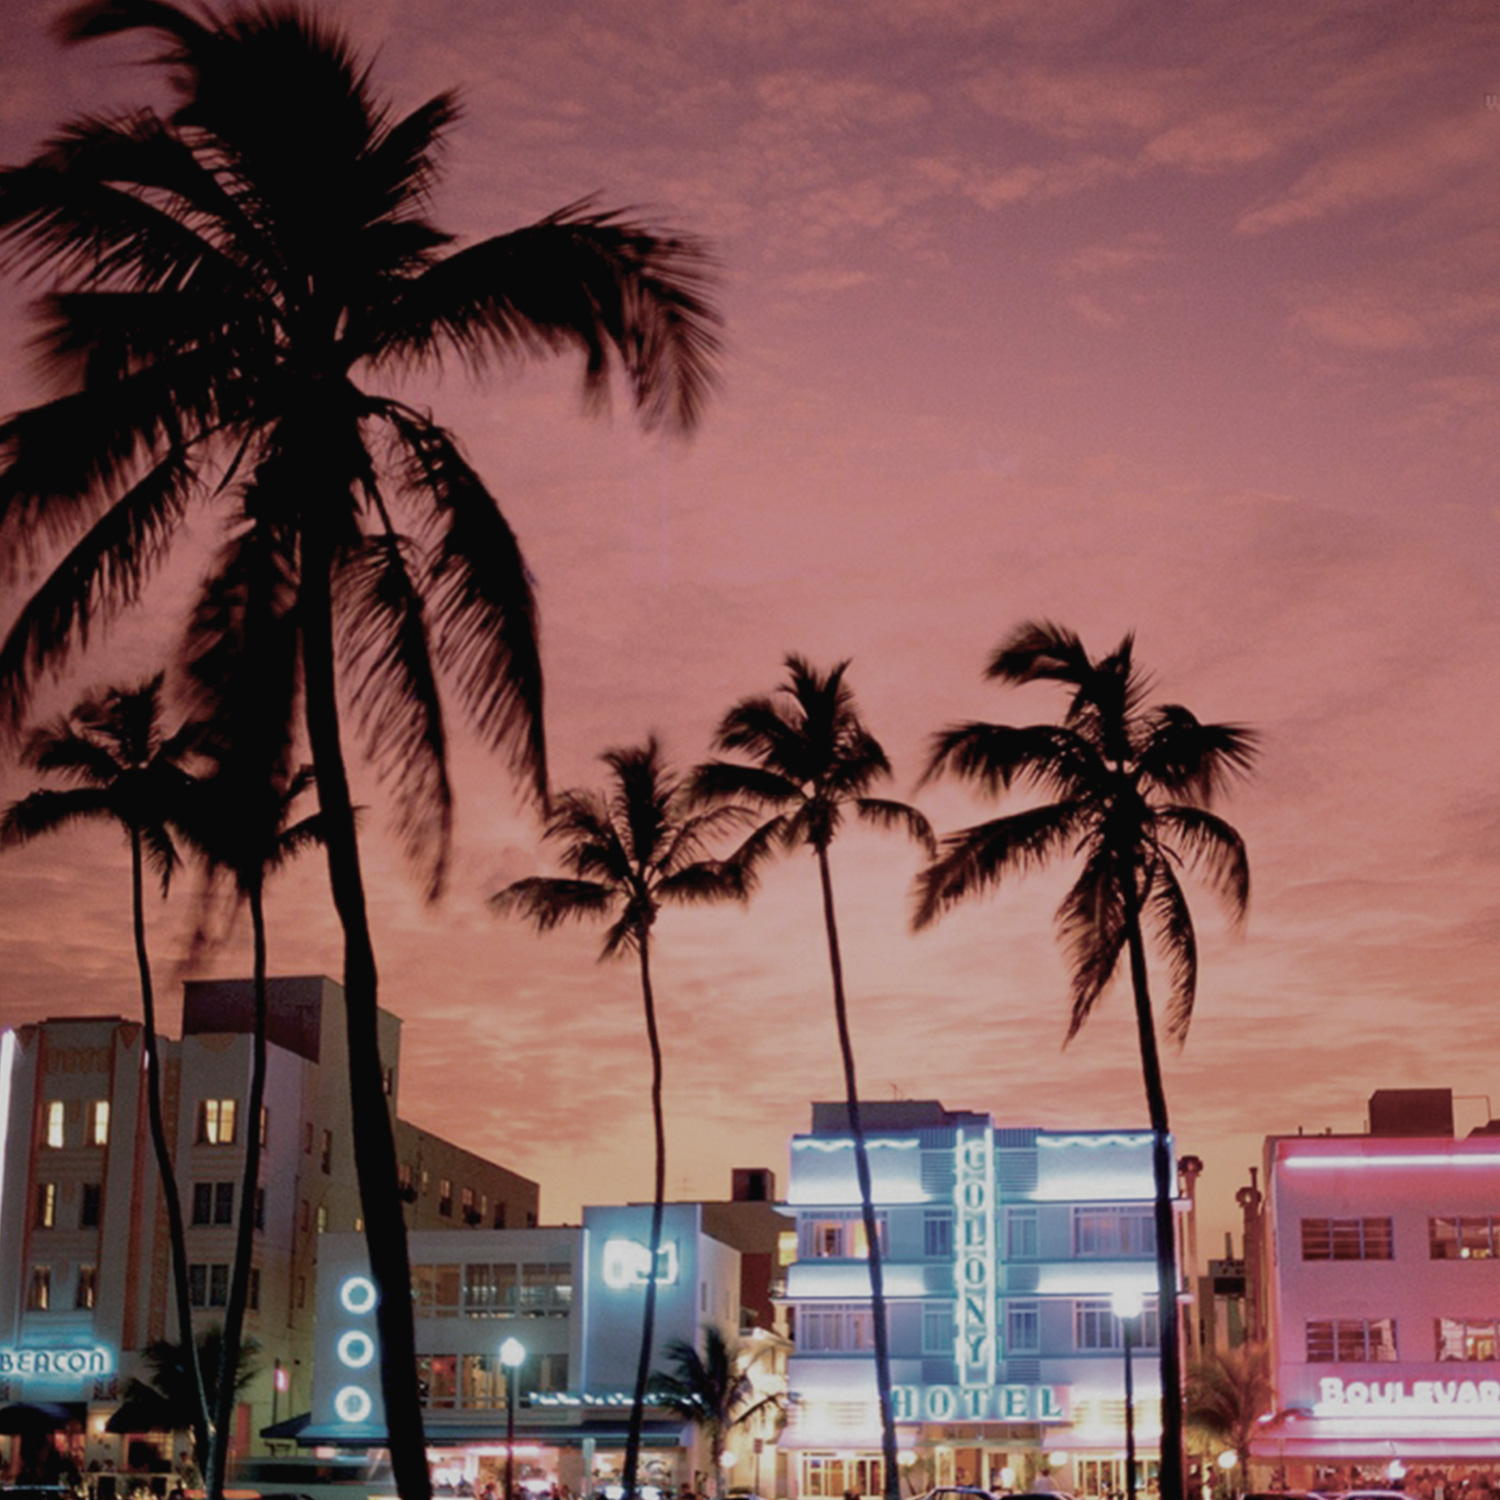 1999Per coprire la parte orientale degli Stati Uniti e il mercato caraibico viene costituita la seconda filiale americana a Miami – Florida. Ind.i.a. ottiene la Certificazione di Qualità ISO 9001, rilasciata dall’Ente Tedesco TÜV.